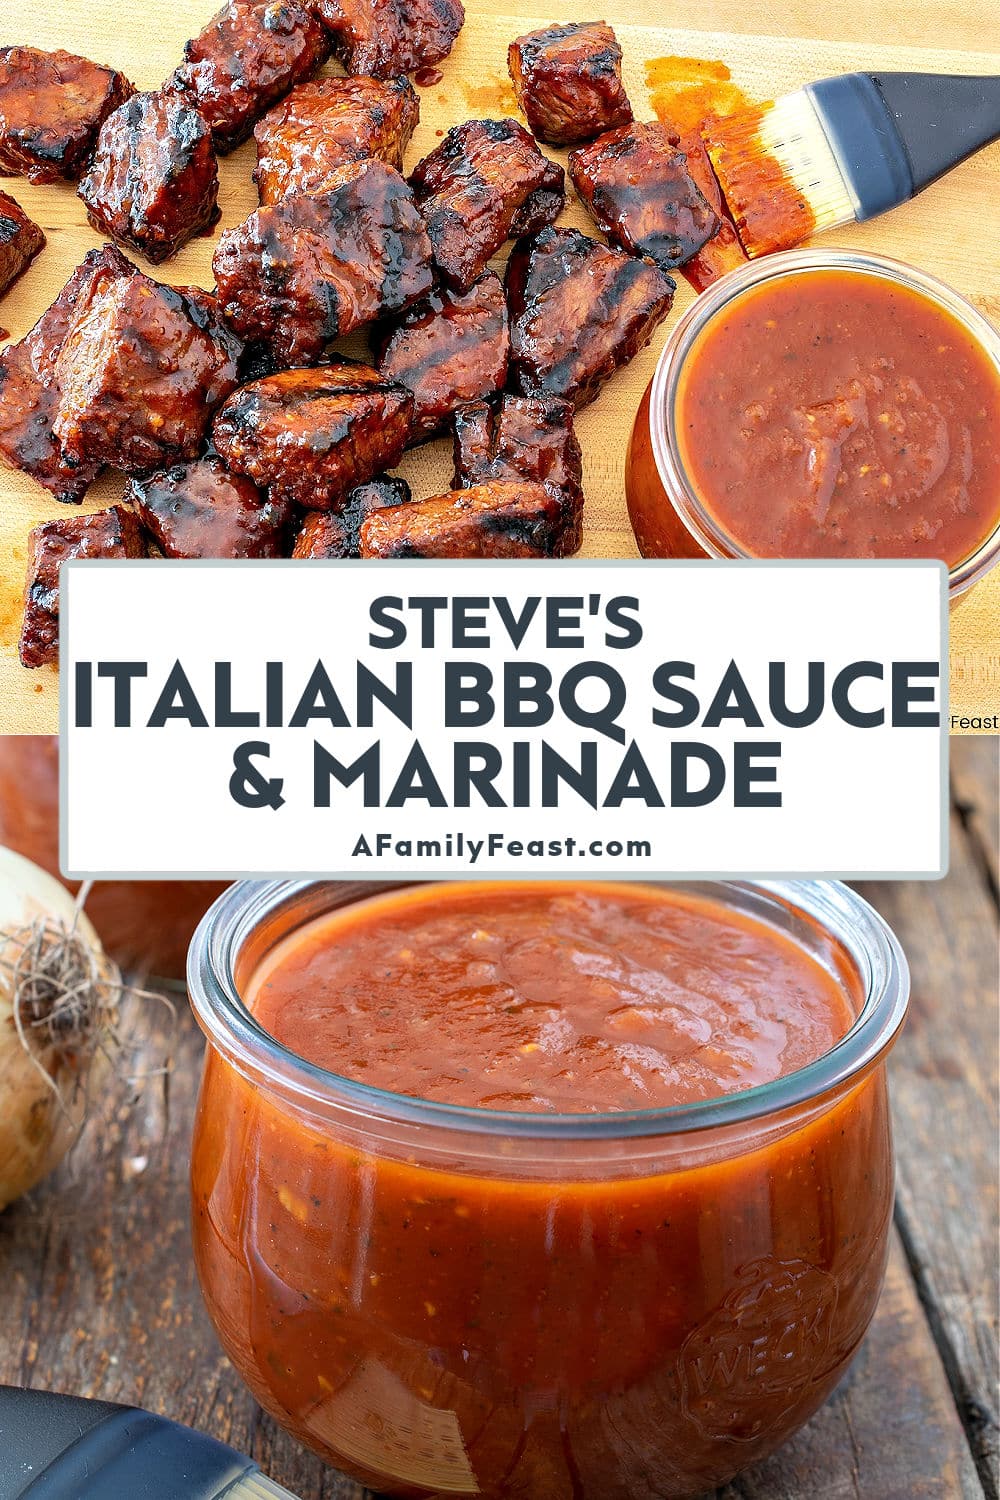 Steve’s Italian BBQ Sauce & Marinade - A Family Feast